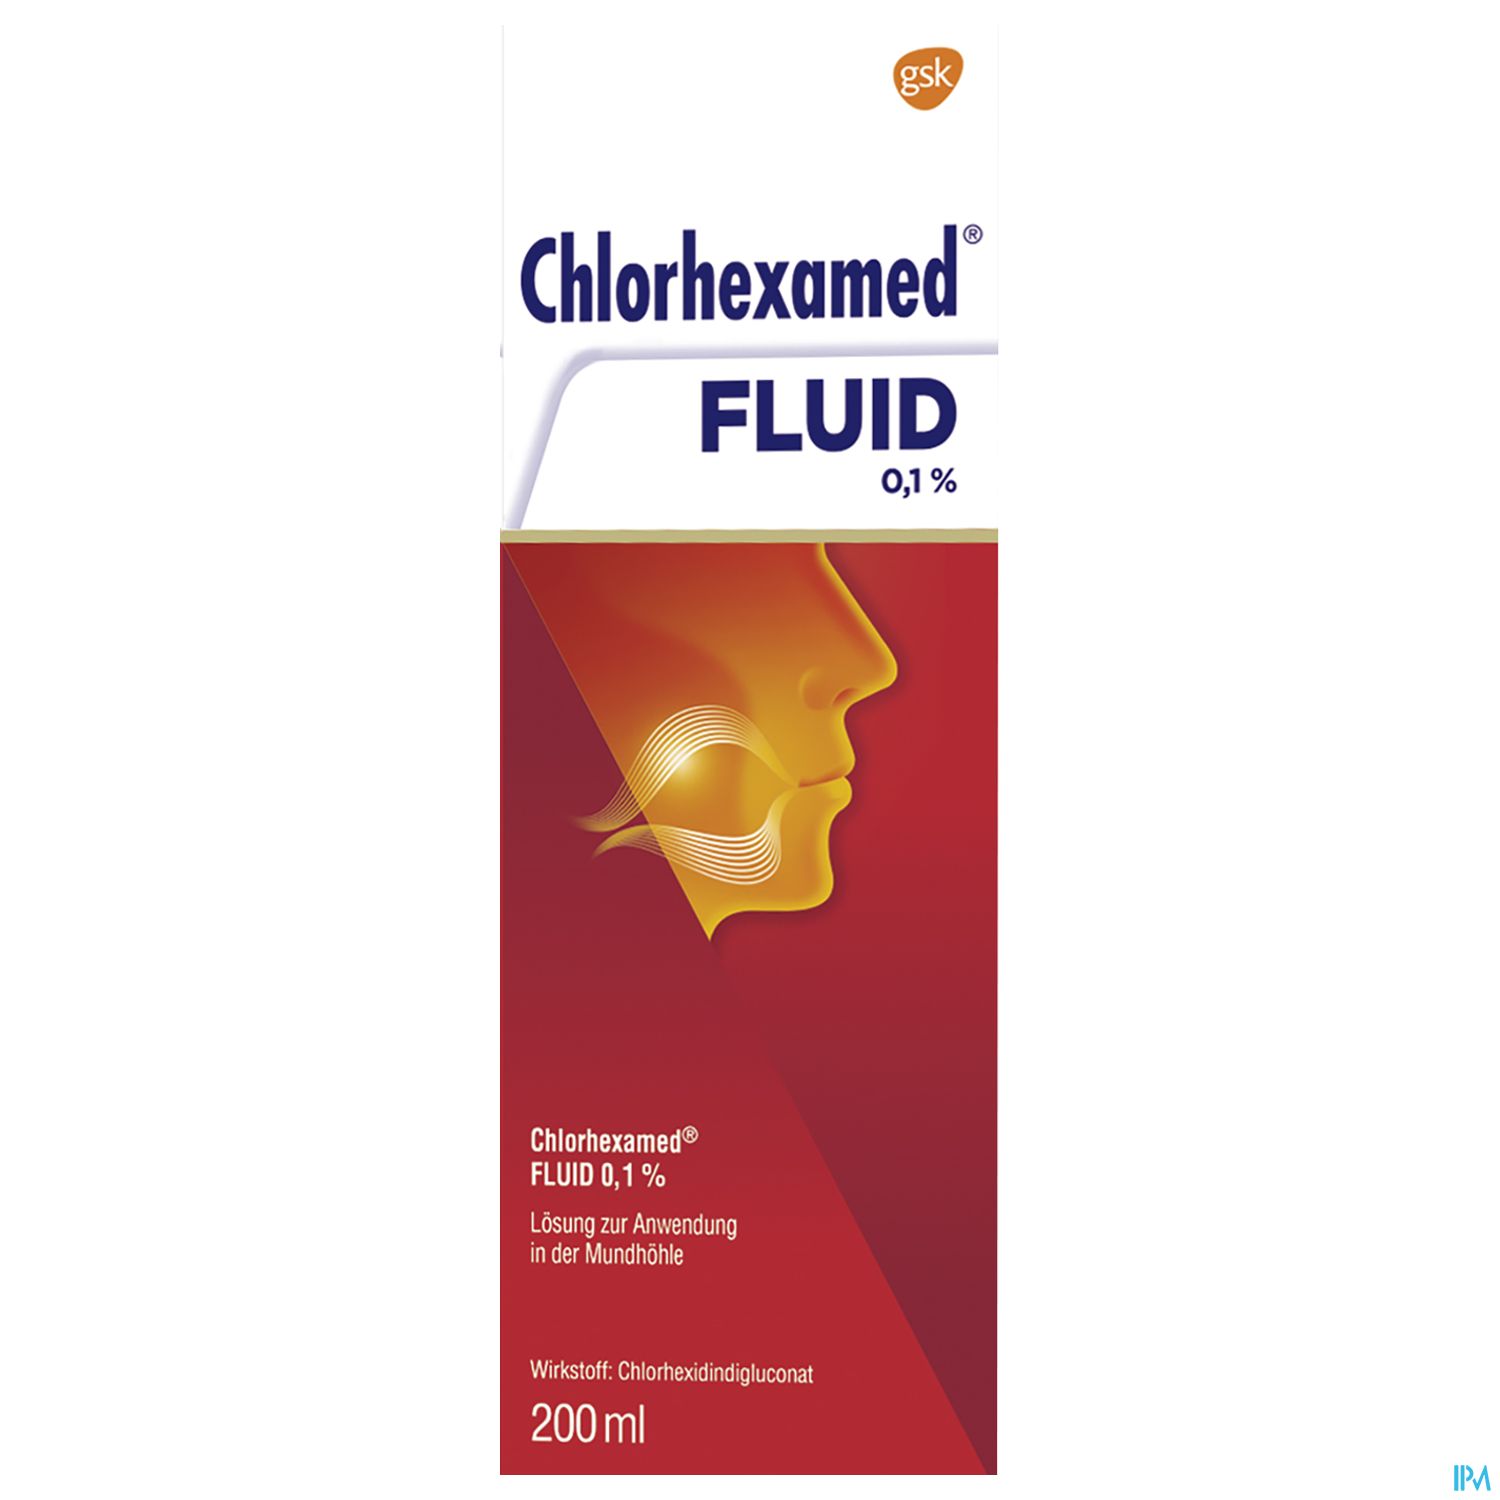 Chlorhexamed fluid 0,1%